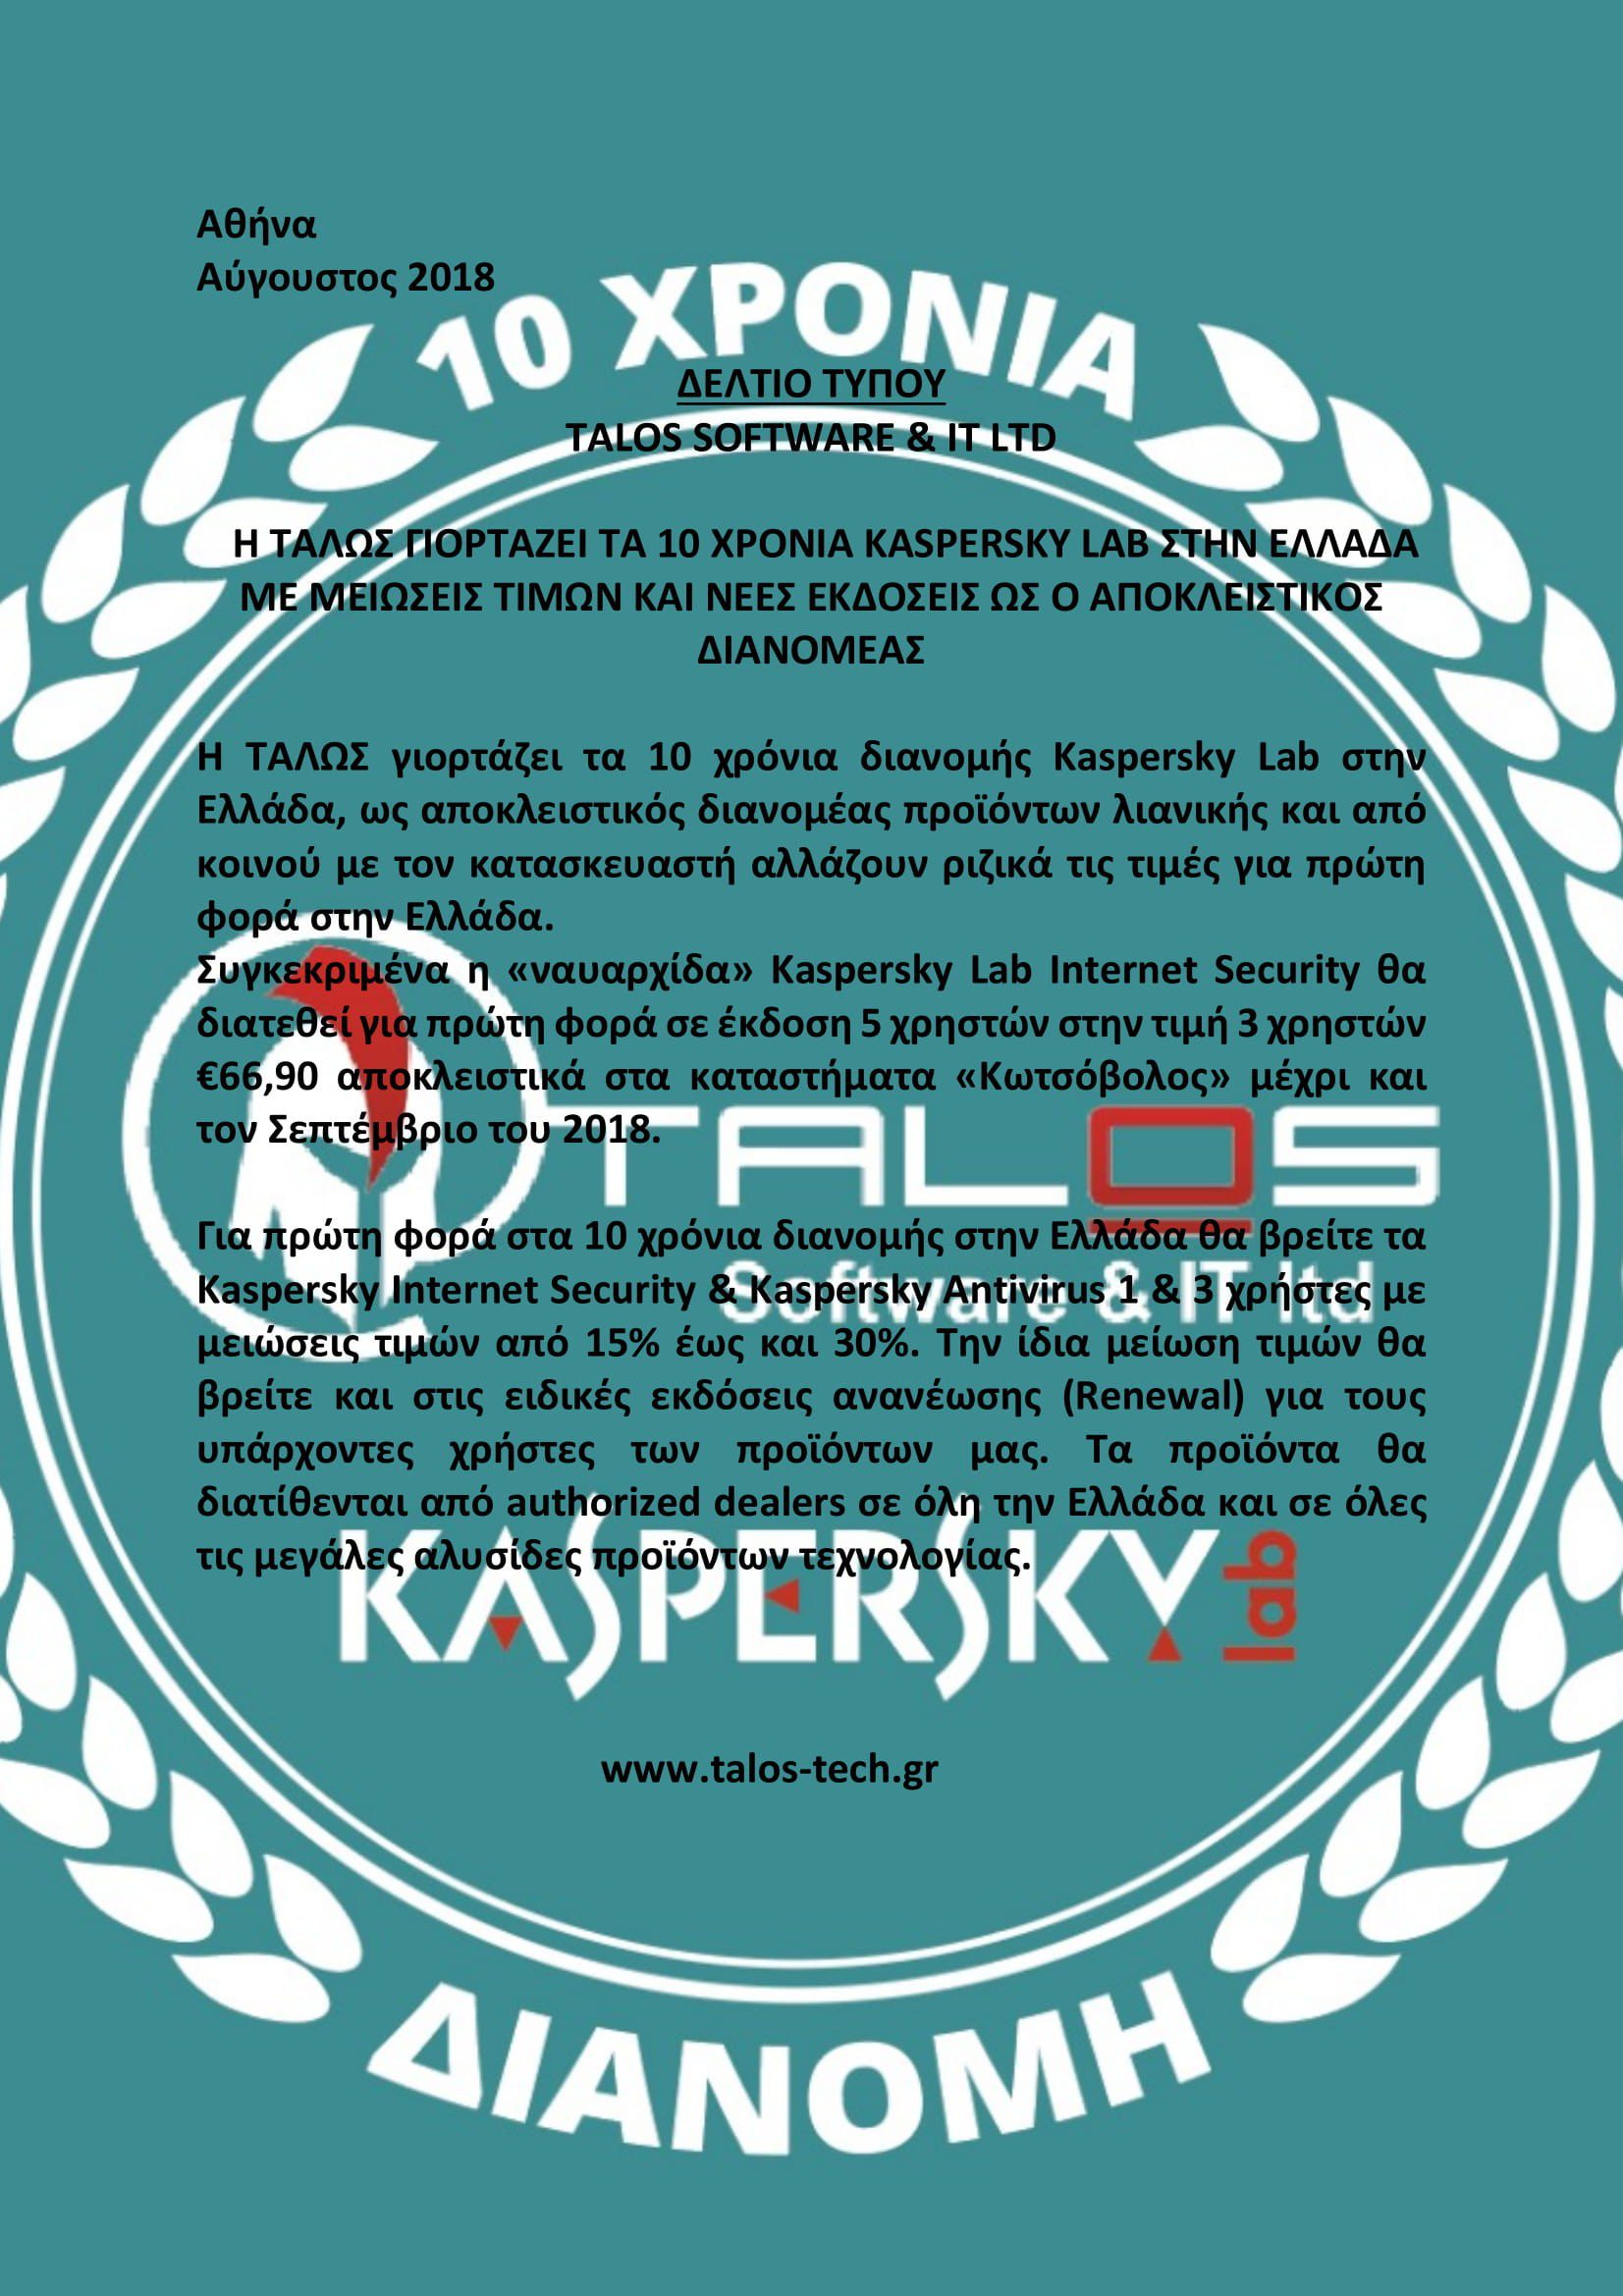 H ΤΑΛΩΣ γιορτάζει τα 10 χρόνια ΚASPERSKY LAB στην Ελλάδα